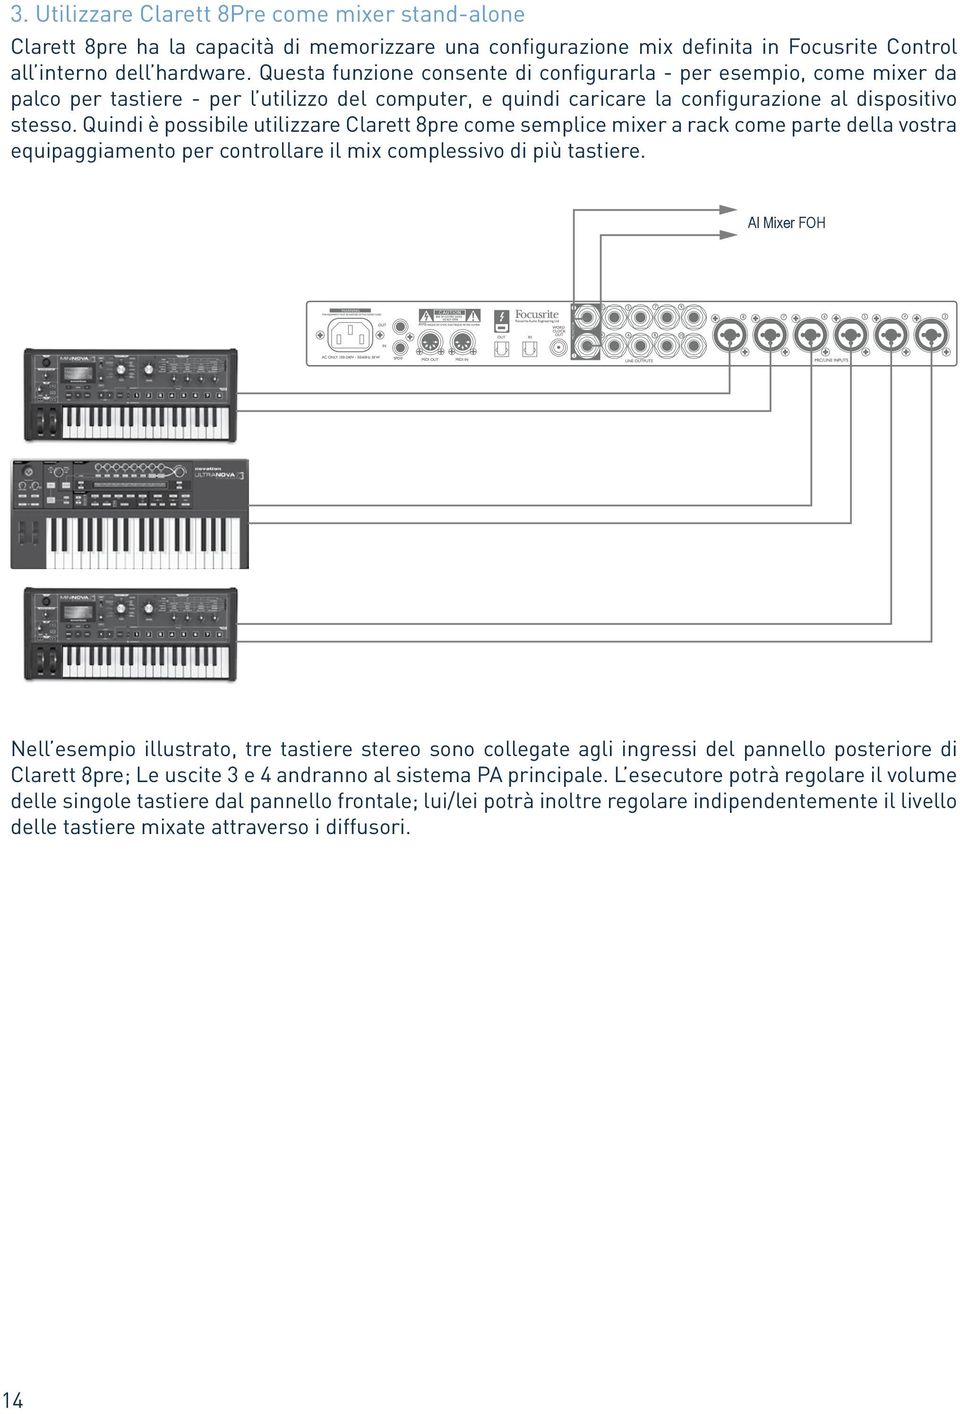 Quindi è possibile utilizzare Clarett 8pre come semplice mixer a rack come parte della vostra equipaggiamento per controllare il mix complessivo di più tastiere.